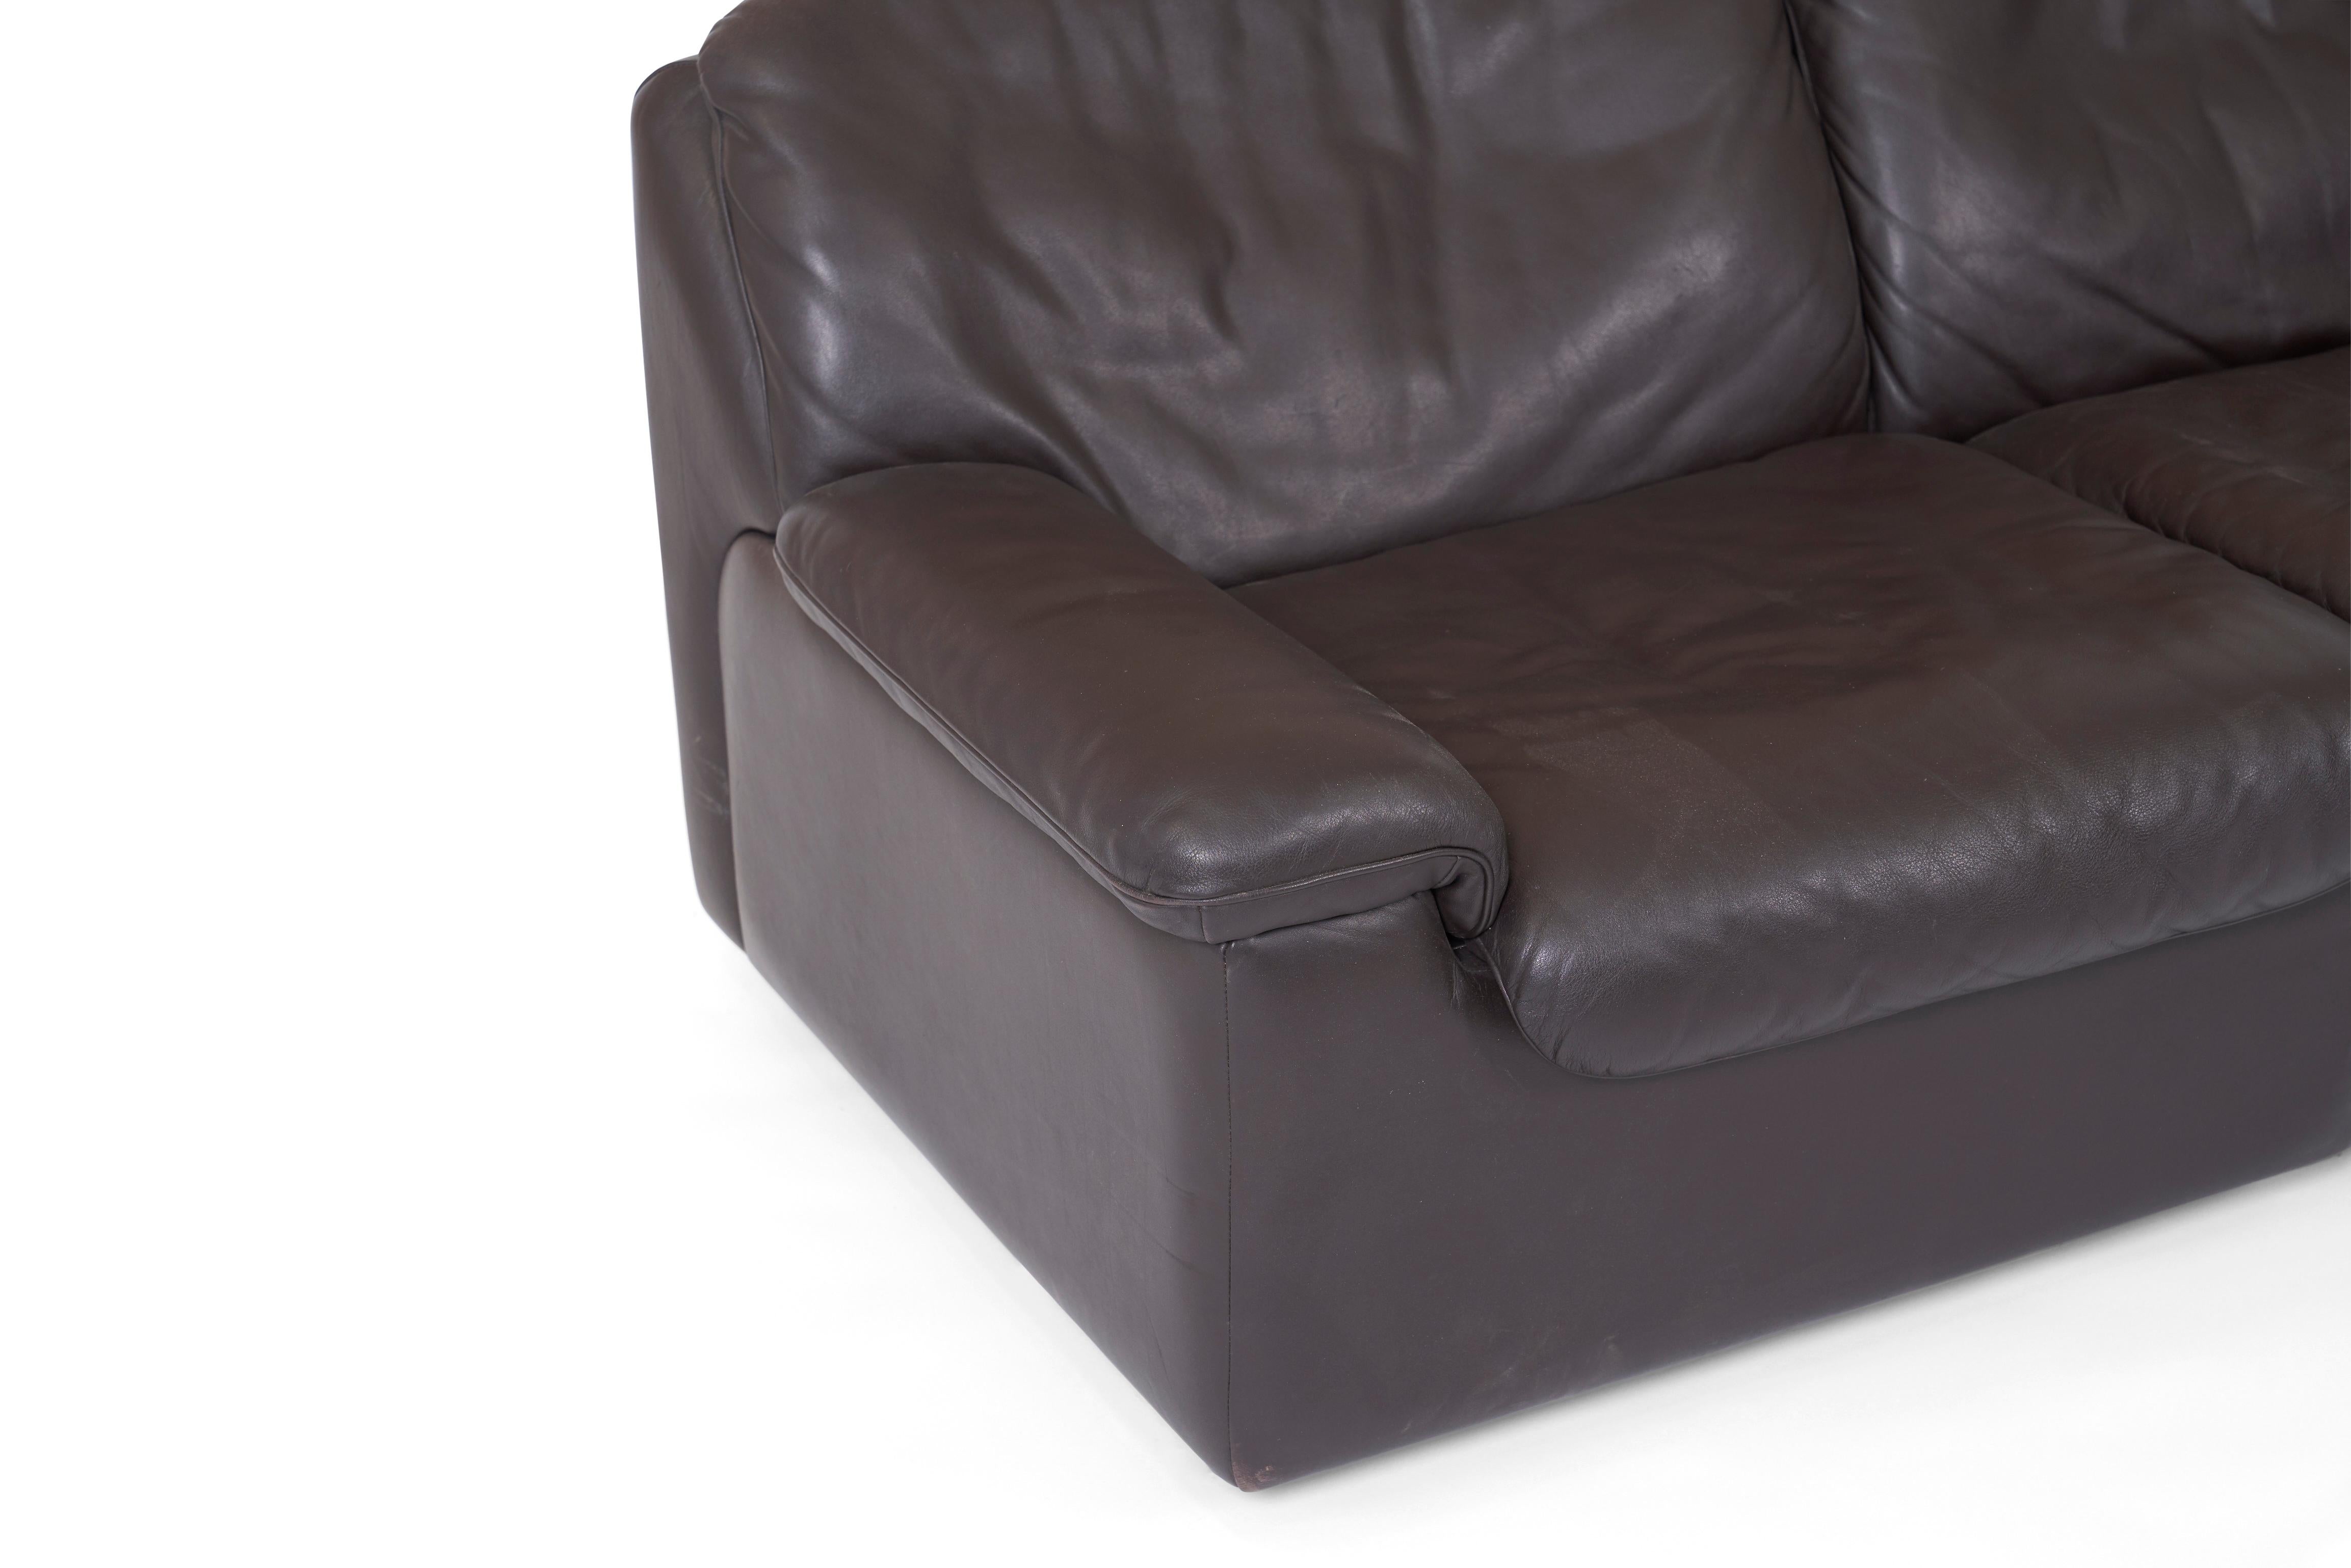 Swiss De Sede Leather Sofa, DS 66